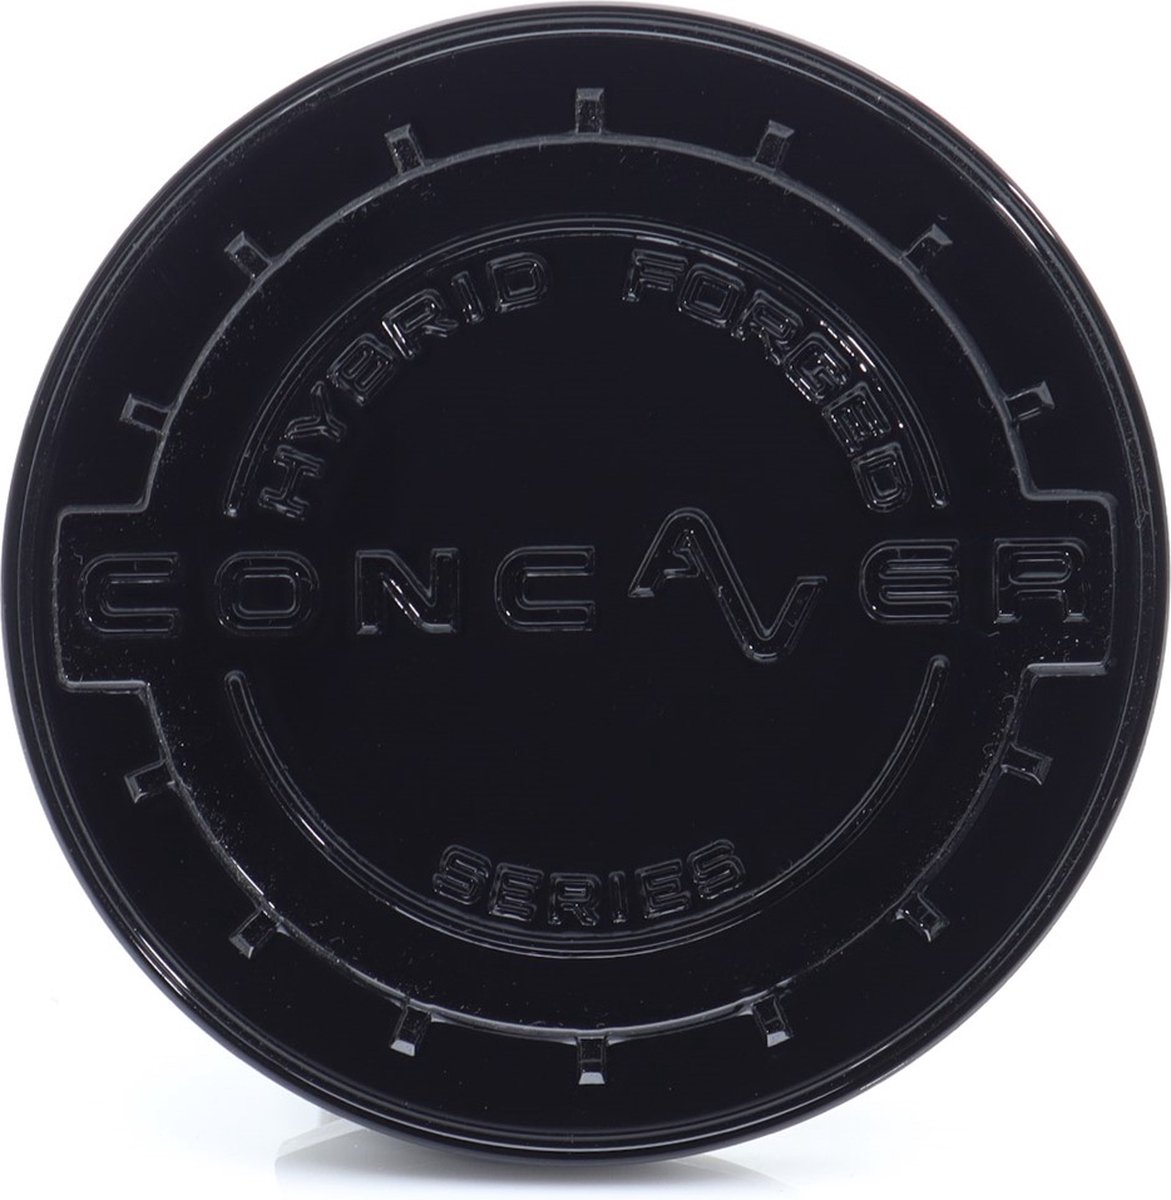 Center cap Concaver wheels CVR platinum black